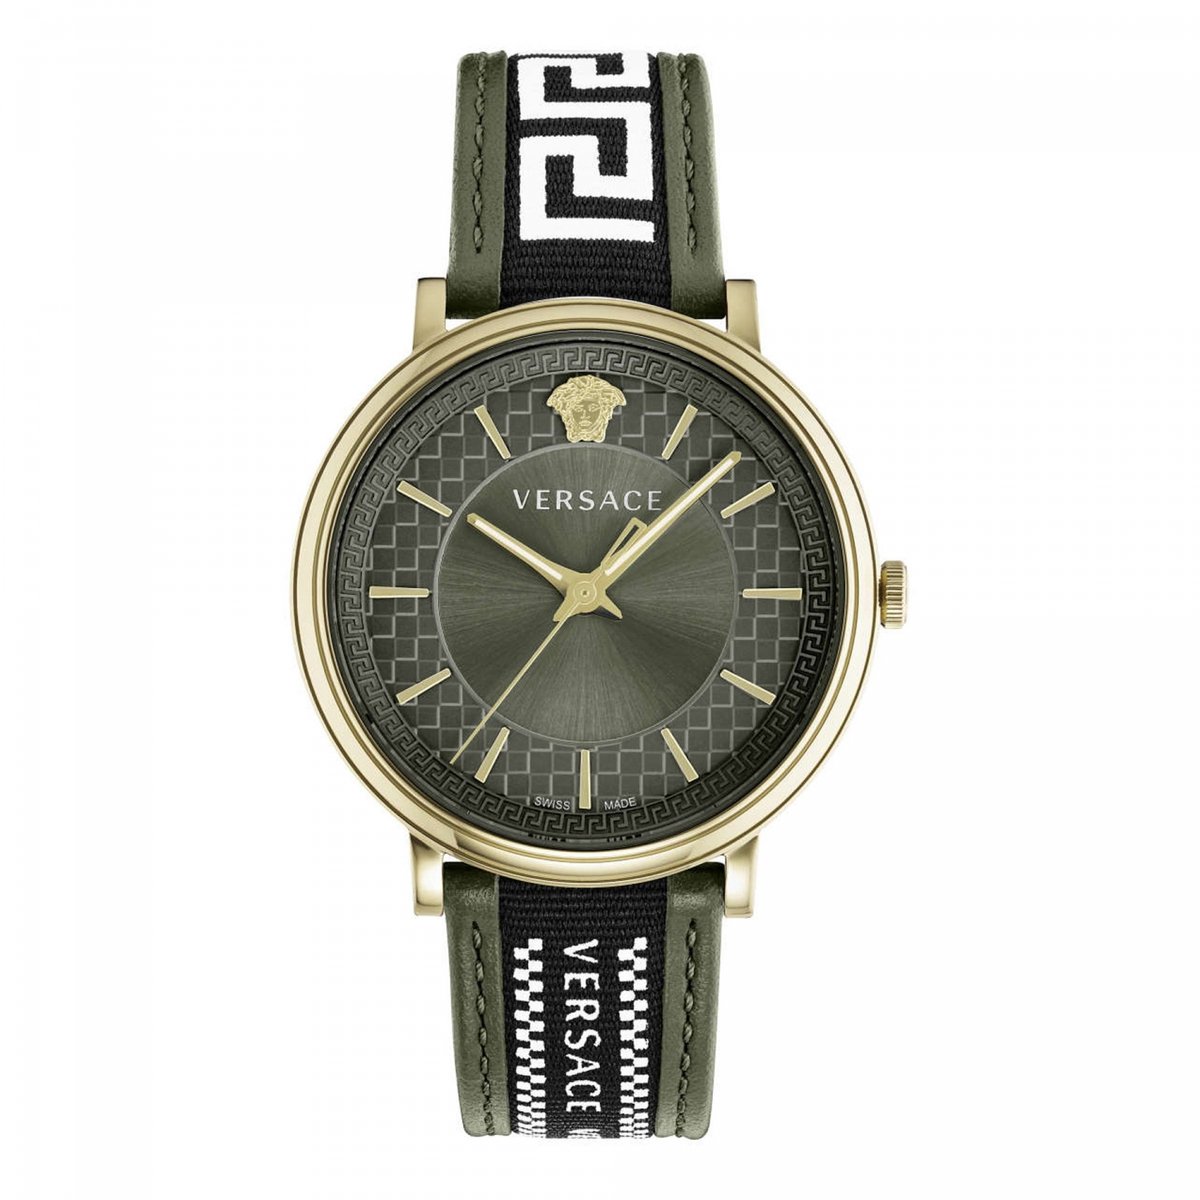 Versace VE5A01621 horloge mannen - Roestvrij Staal - goud